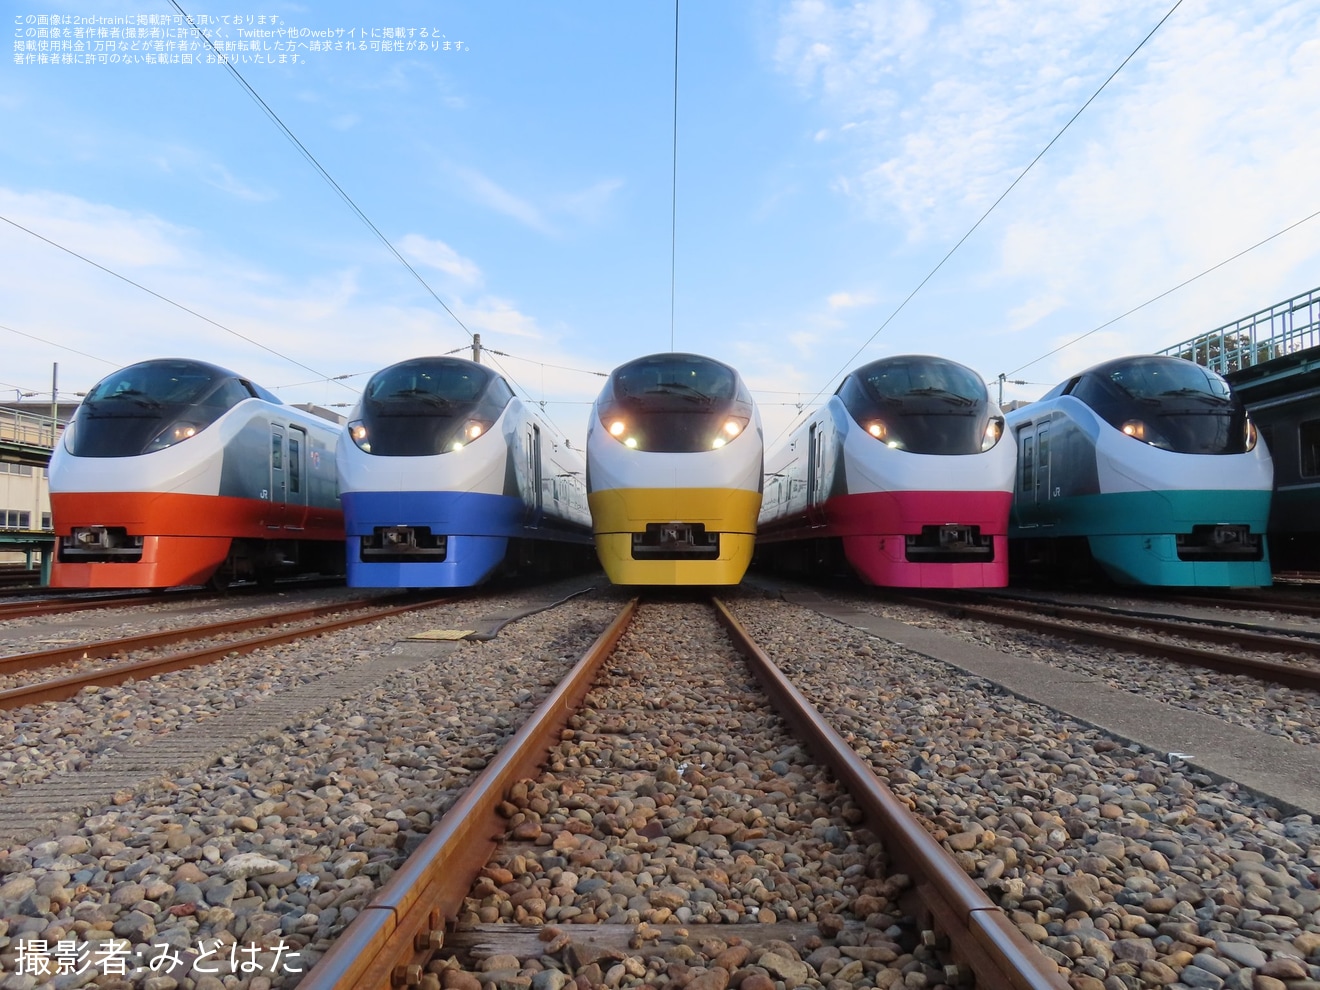 【JR東】「E657系電車 フレッシュひたちリバイバルカラー車両撮影会 第5弾」開催の拡大写真